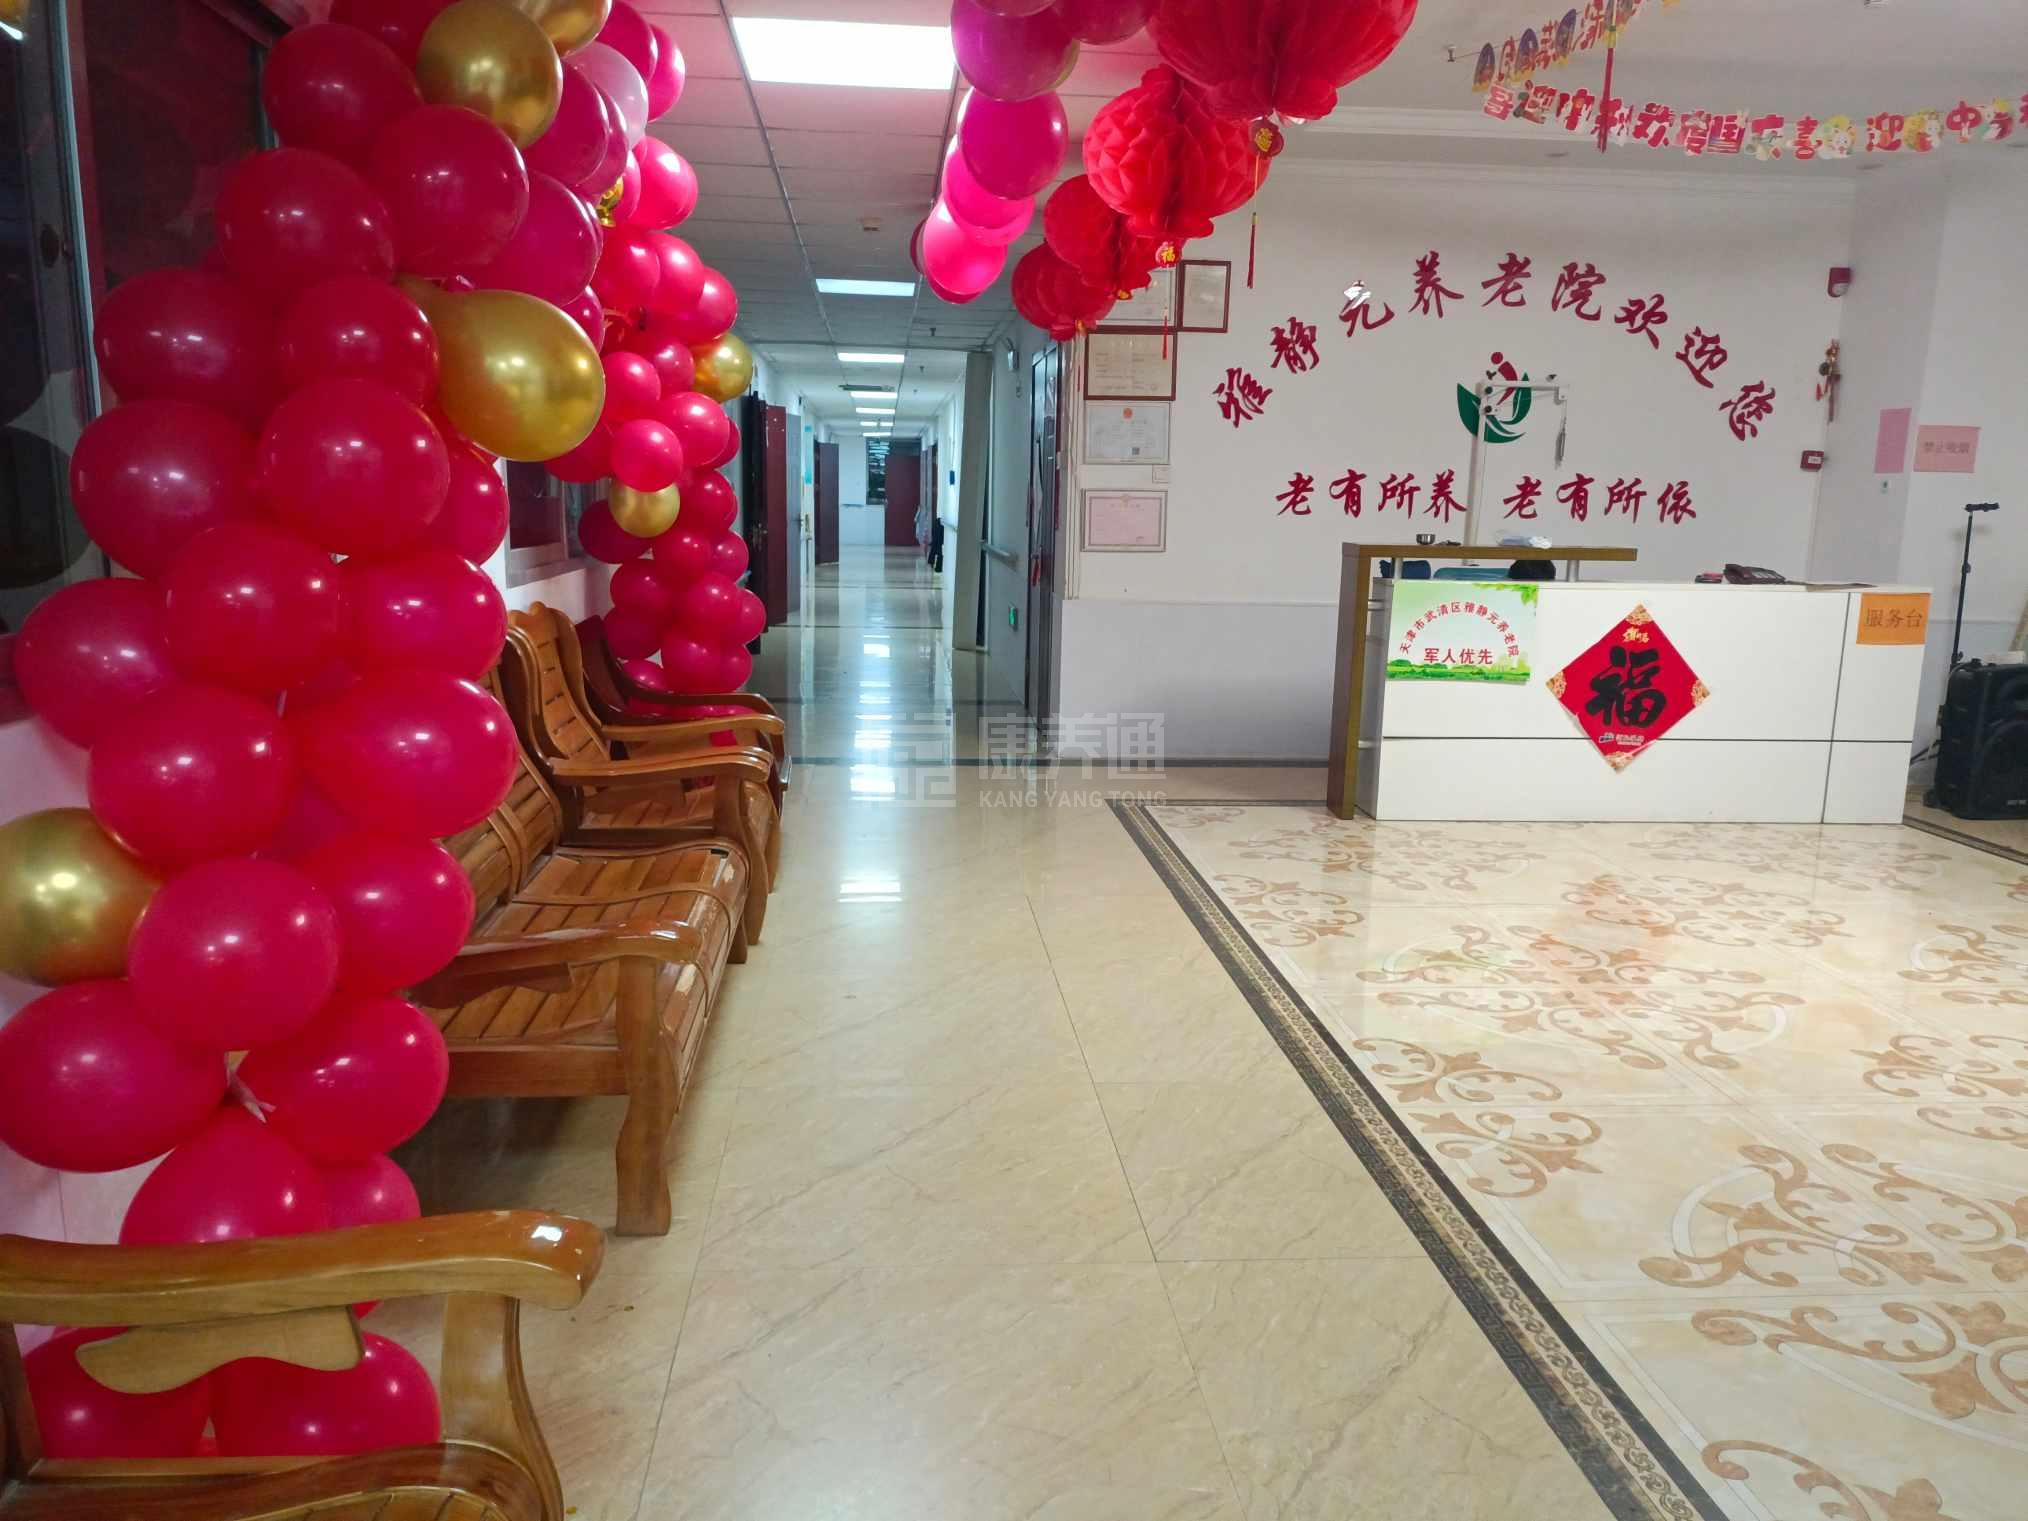 天津市武清区雅静元养老院服务项目图1健康安全、营养均衡、味美可口